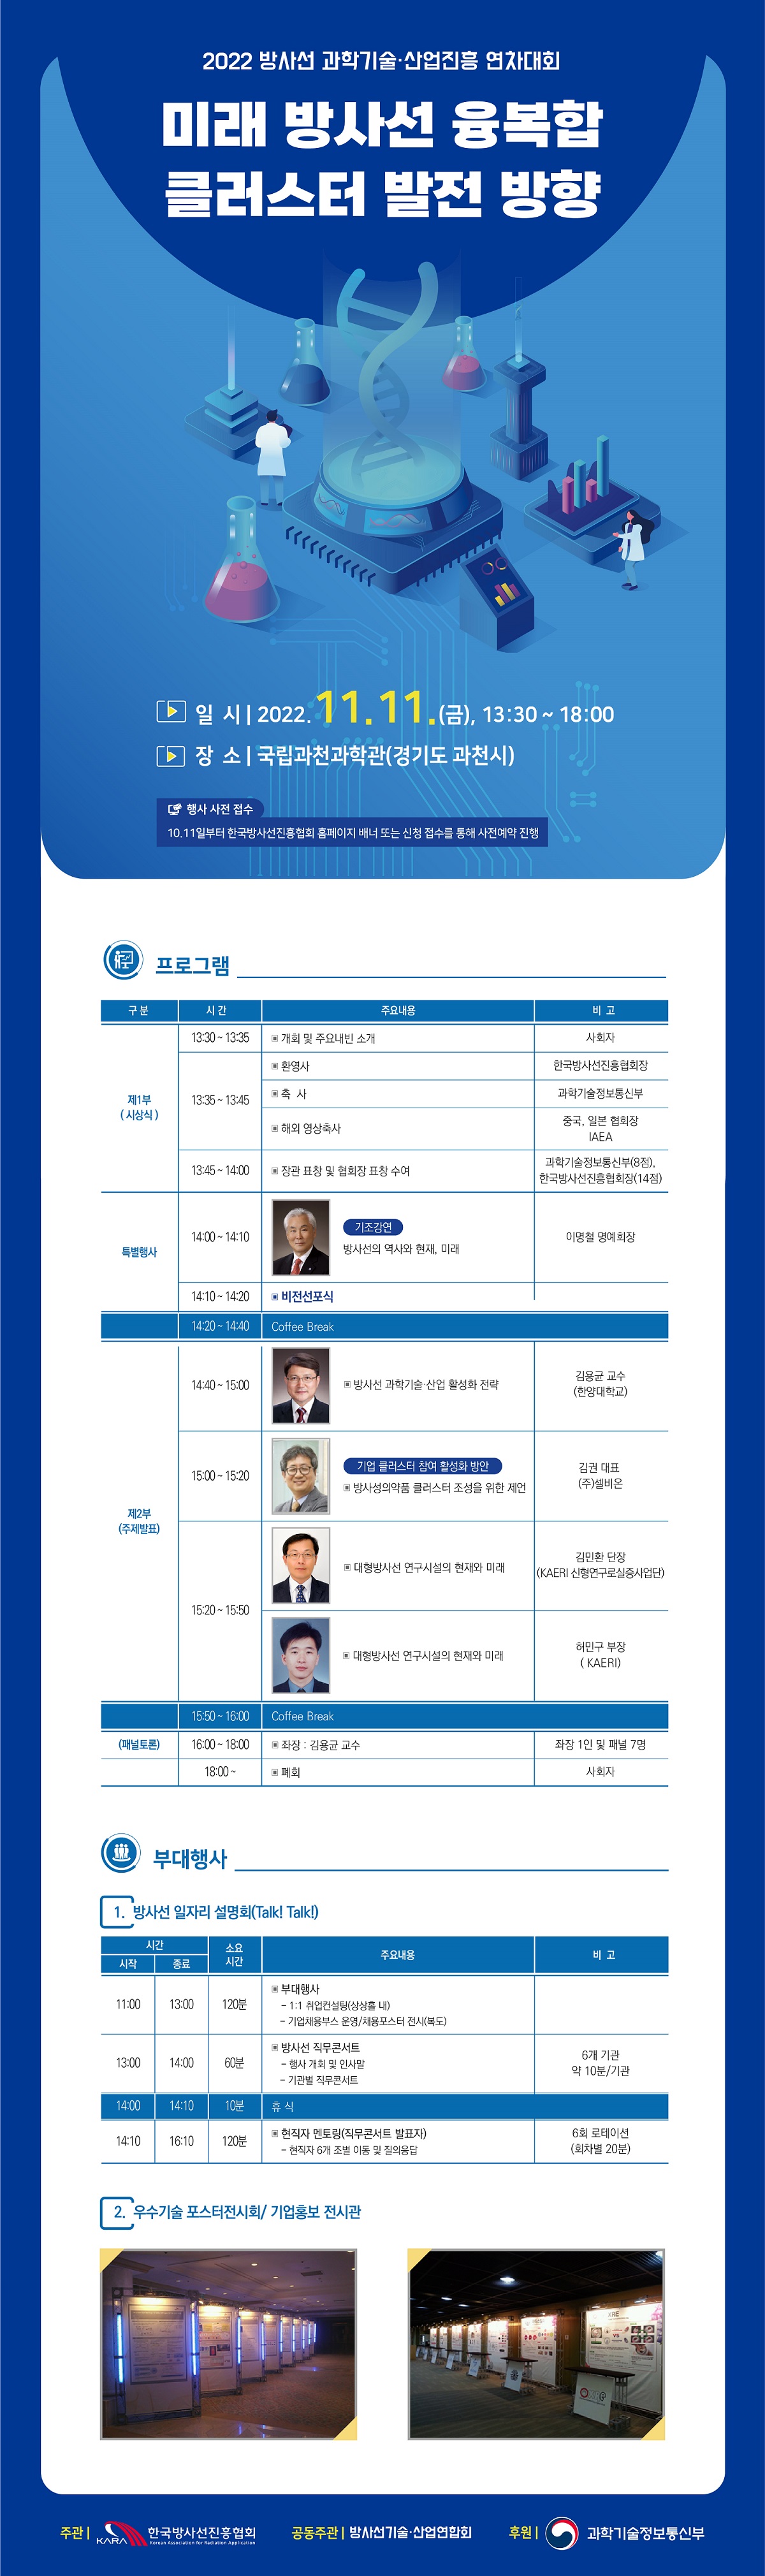 (별첨2) 2022 방사선 과학기술 산업진흥 연차대회 포스터(공지사항).jpg